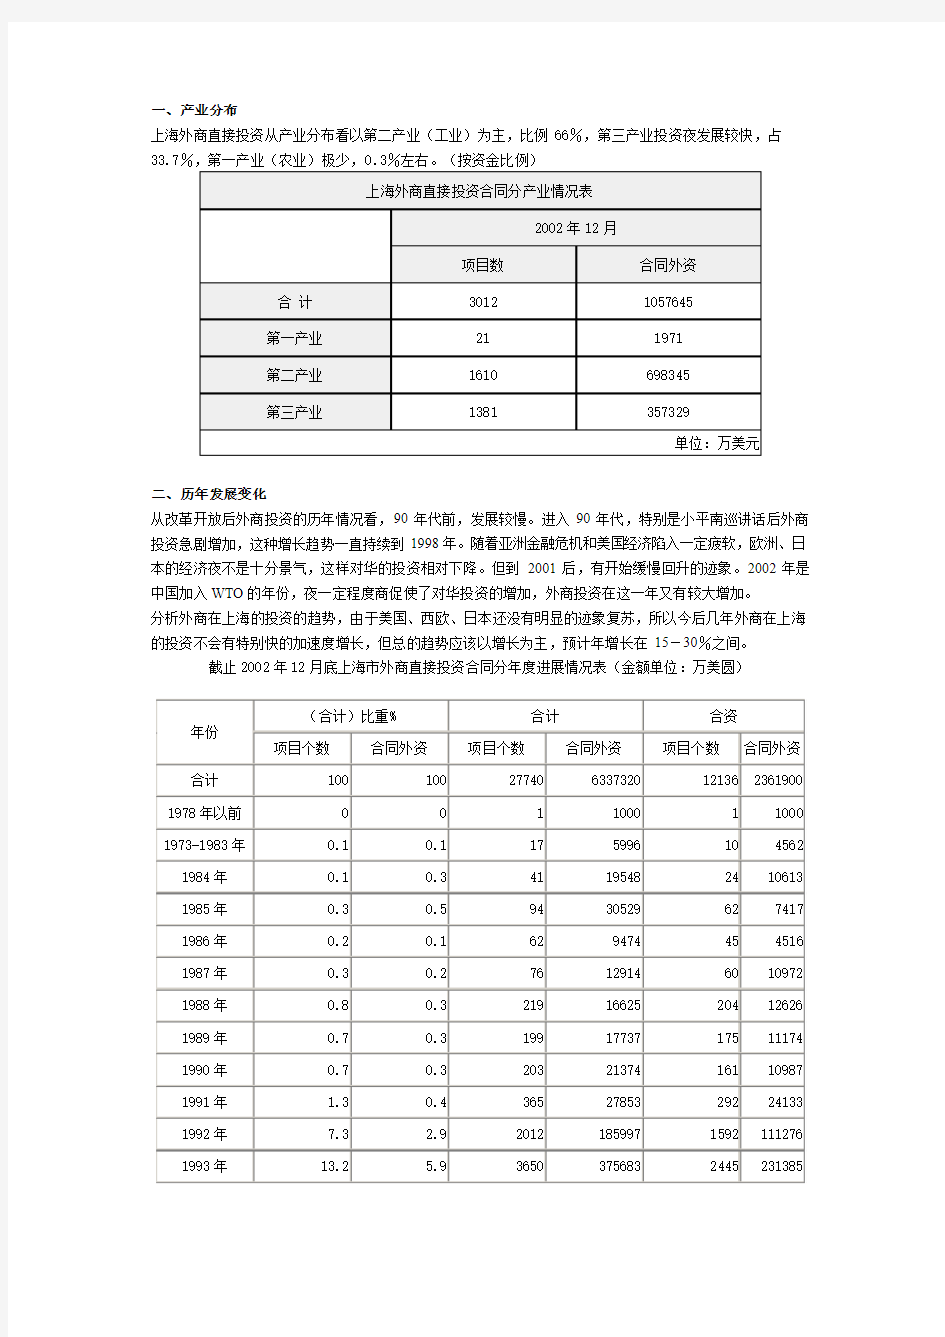 外商在上海投资情况分析!